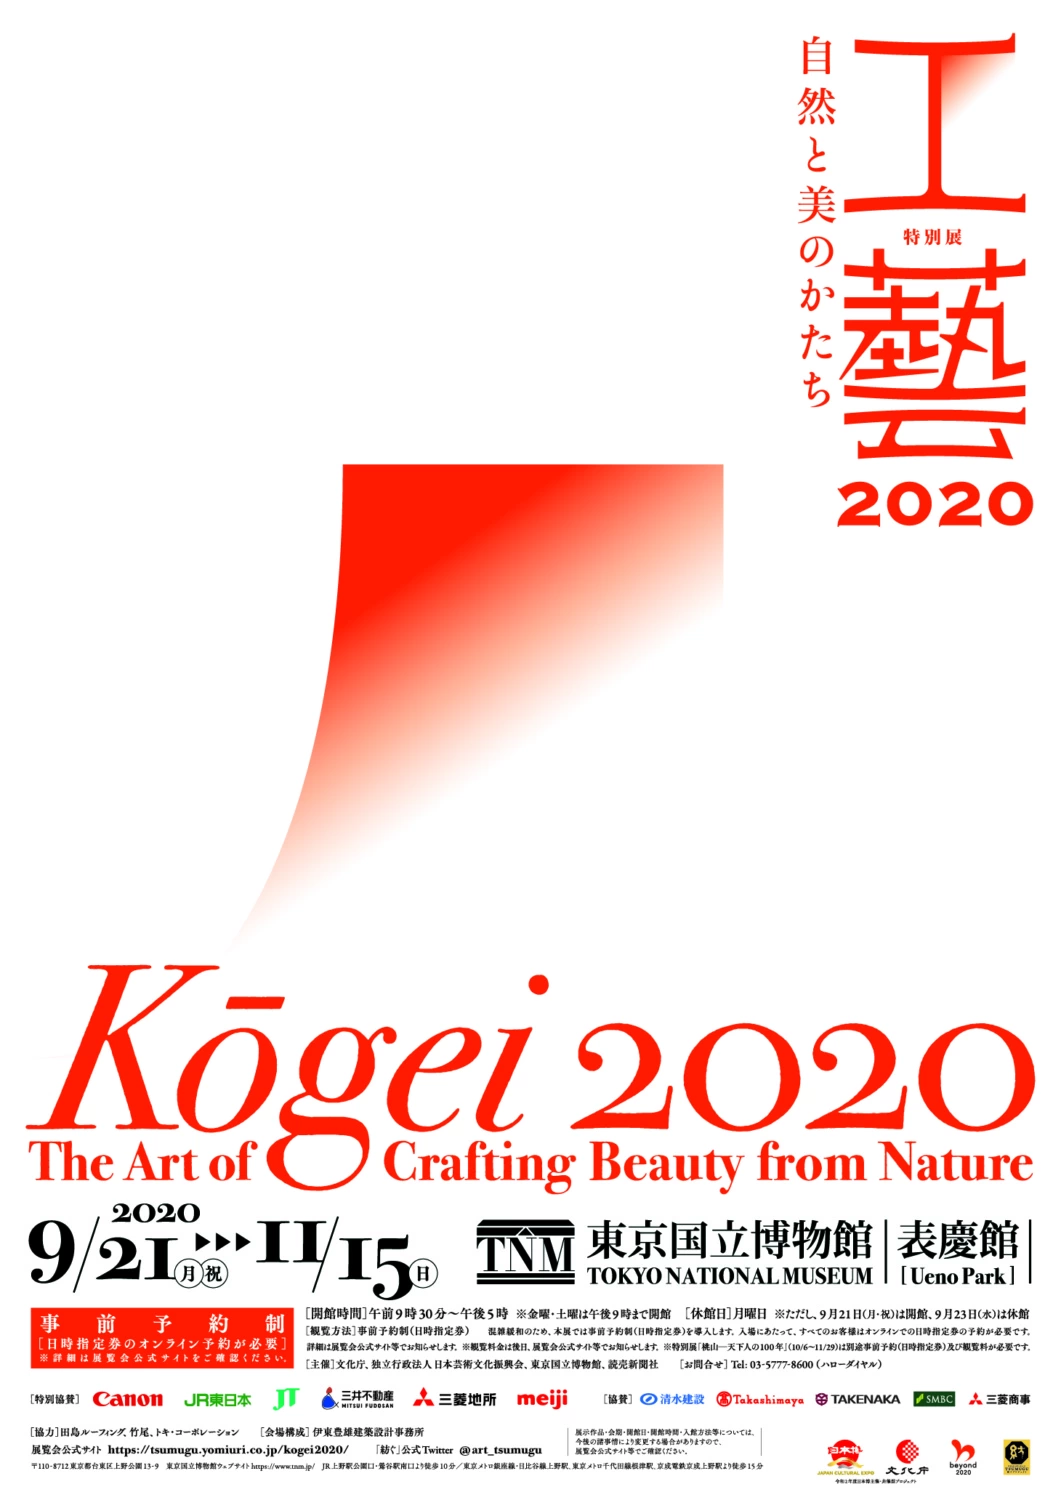 特別展「工藝2020-自然と美のかたち-」